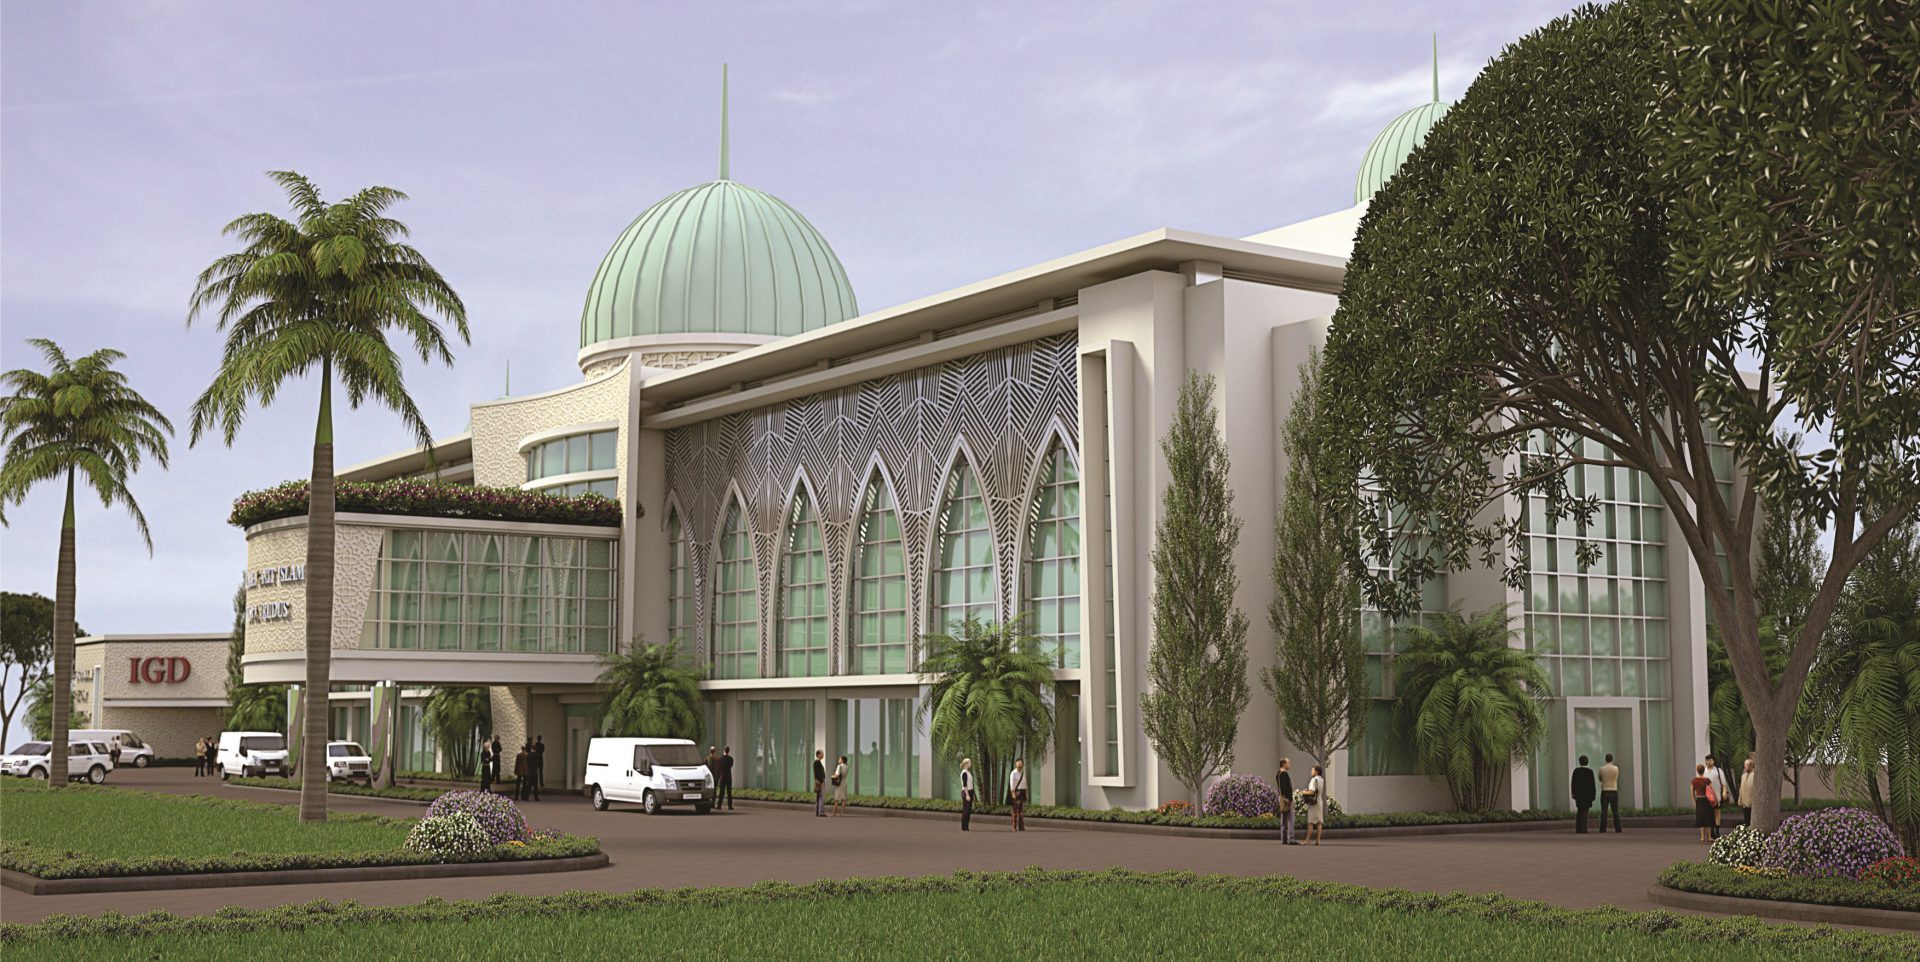 Rumah Sakit Islam Sunan Kudus